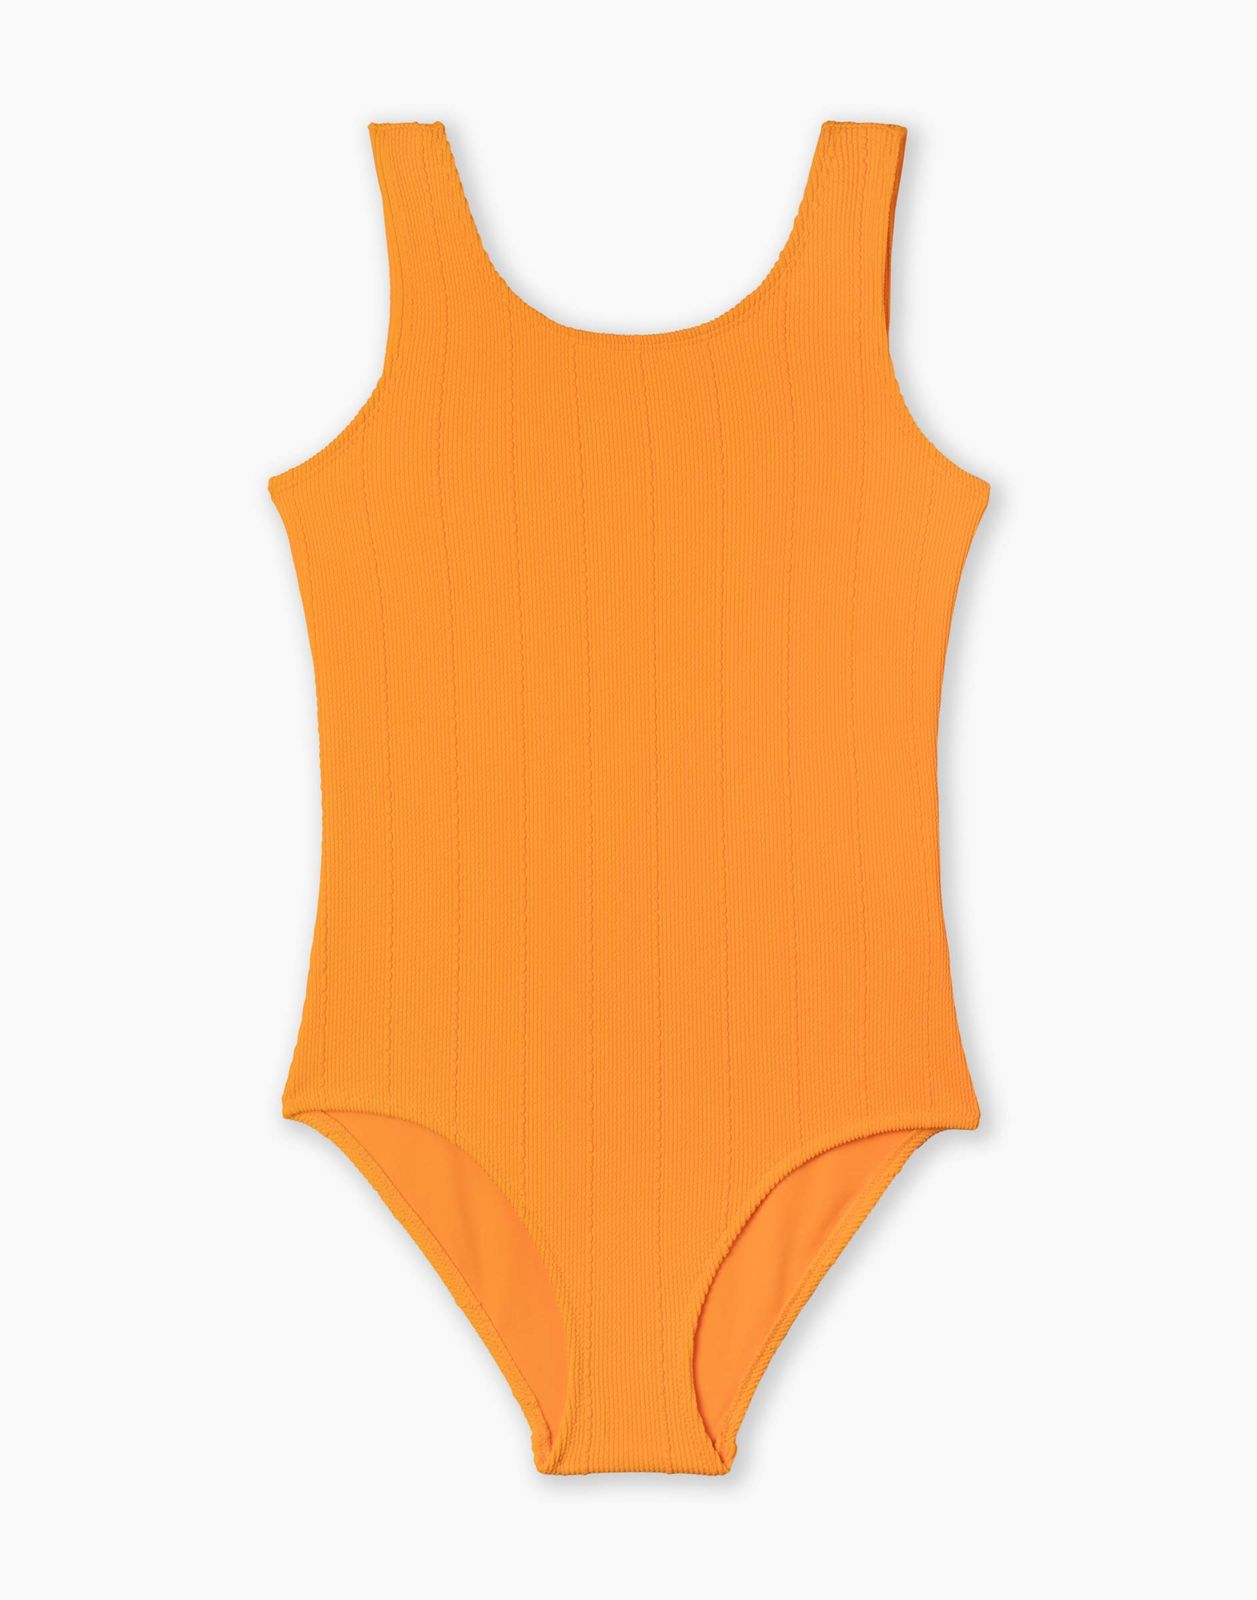 Слитный купальник для девочки Gloria Jeans GSM001671 оранжевый 6-8л/128